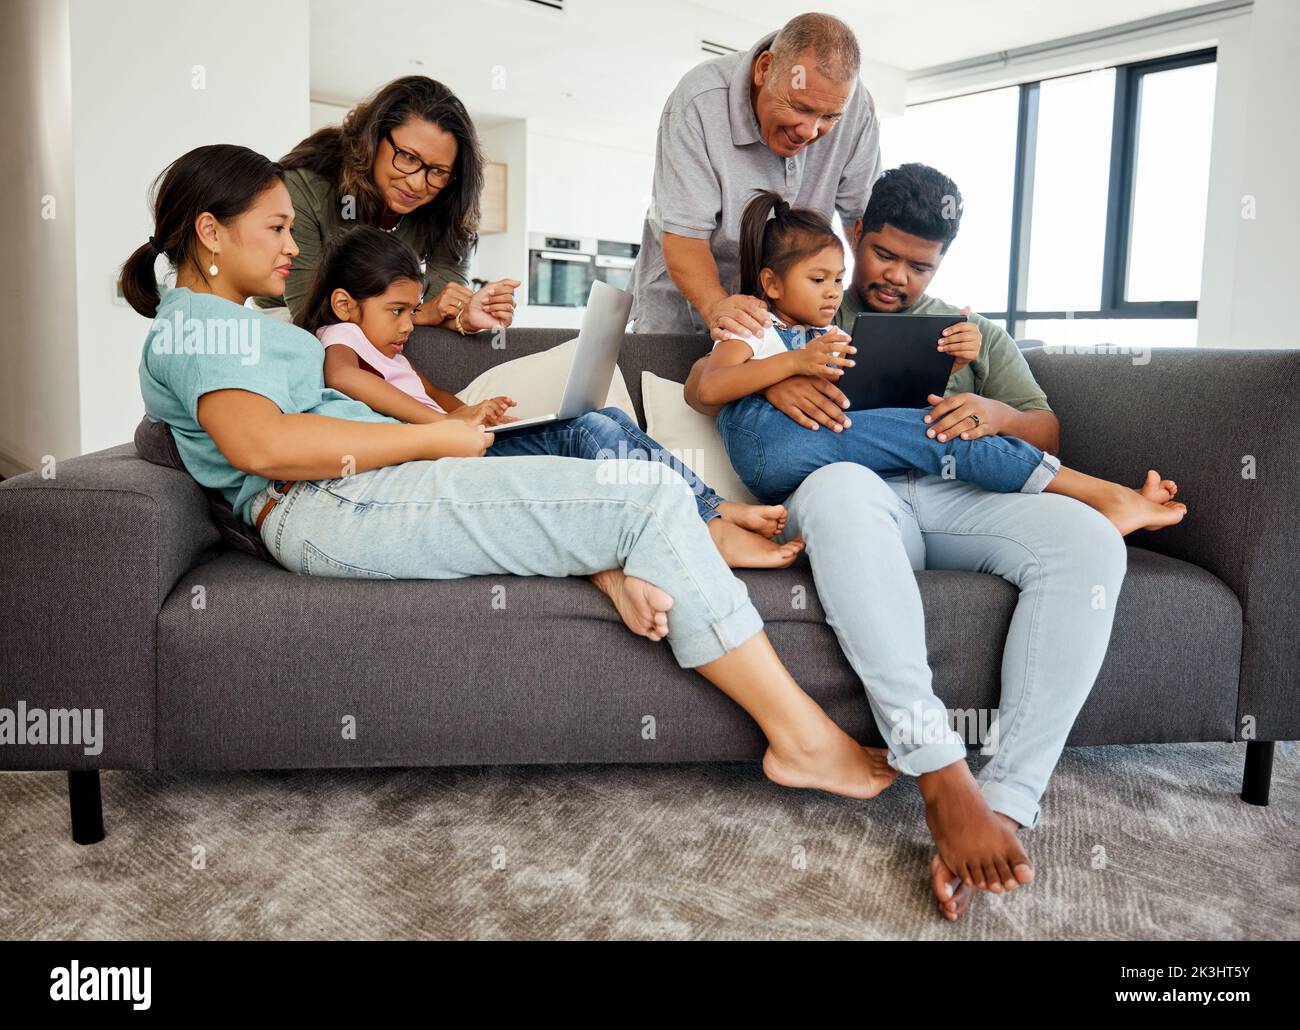 Familie, Kinder und Technik mit Kindern, Großeltern und Eltern im Wohnzimmer. Mädchen, Schwester und ältere Verwandte beobachten eine Stockfoto